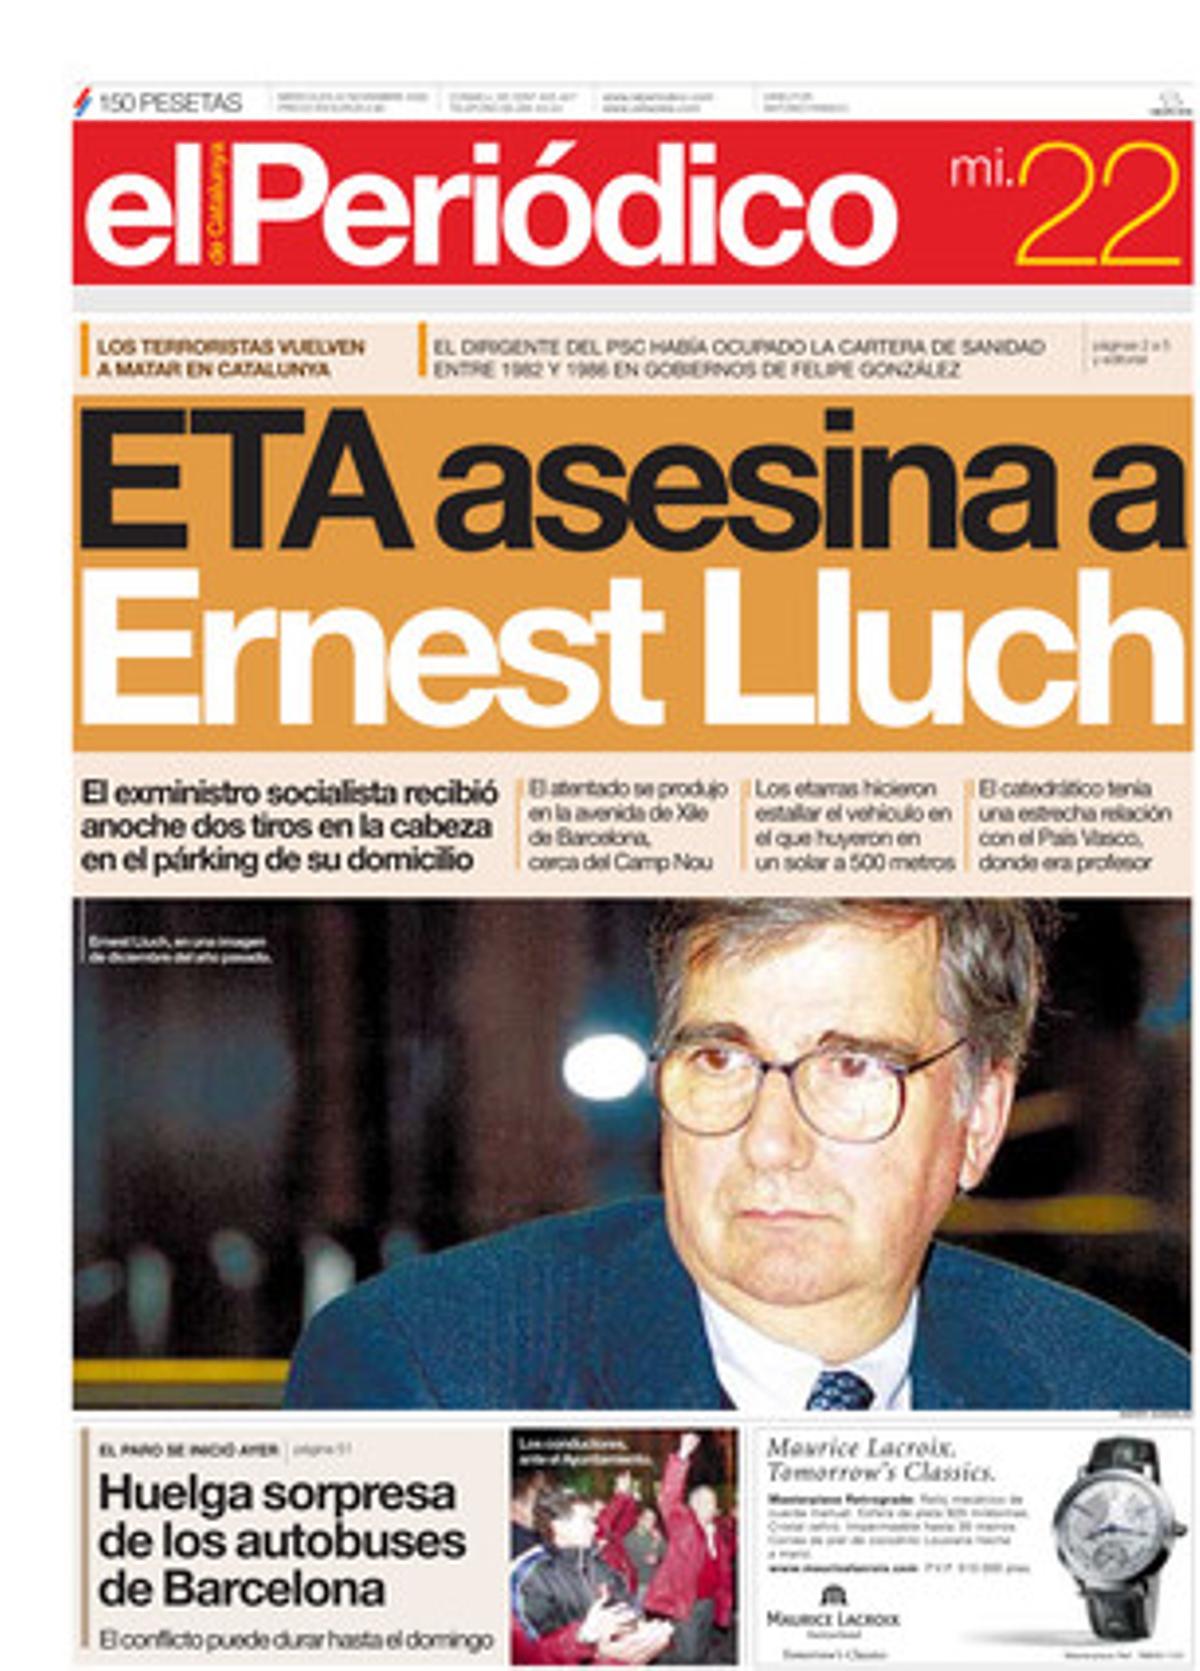 La banda terrorista assassina Ernest Lluch. 22/11/2000